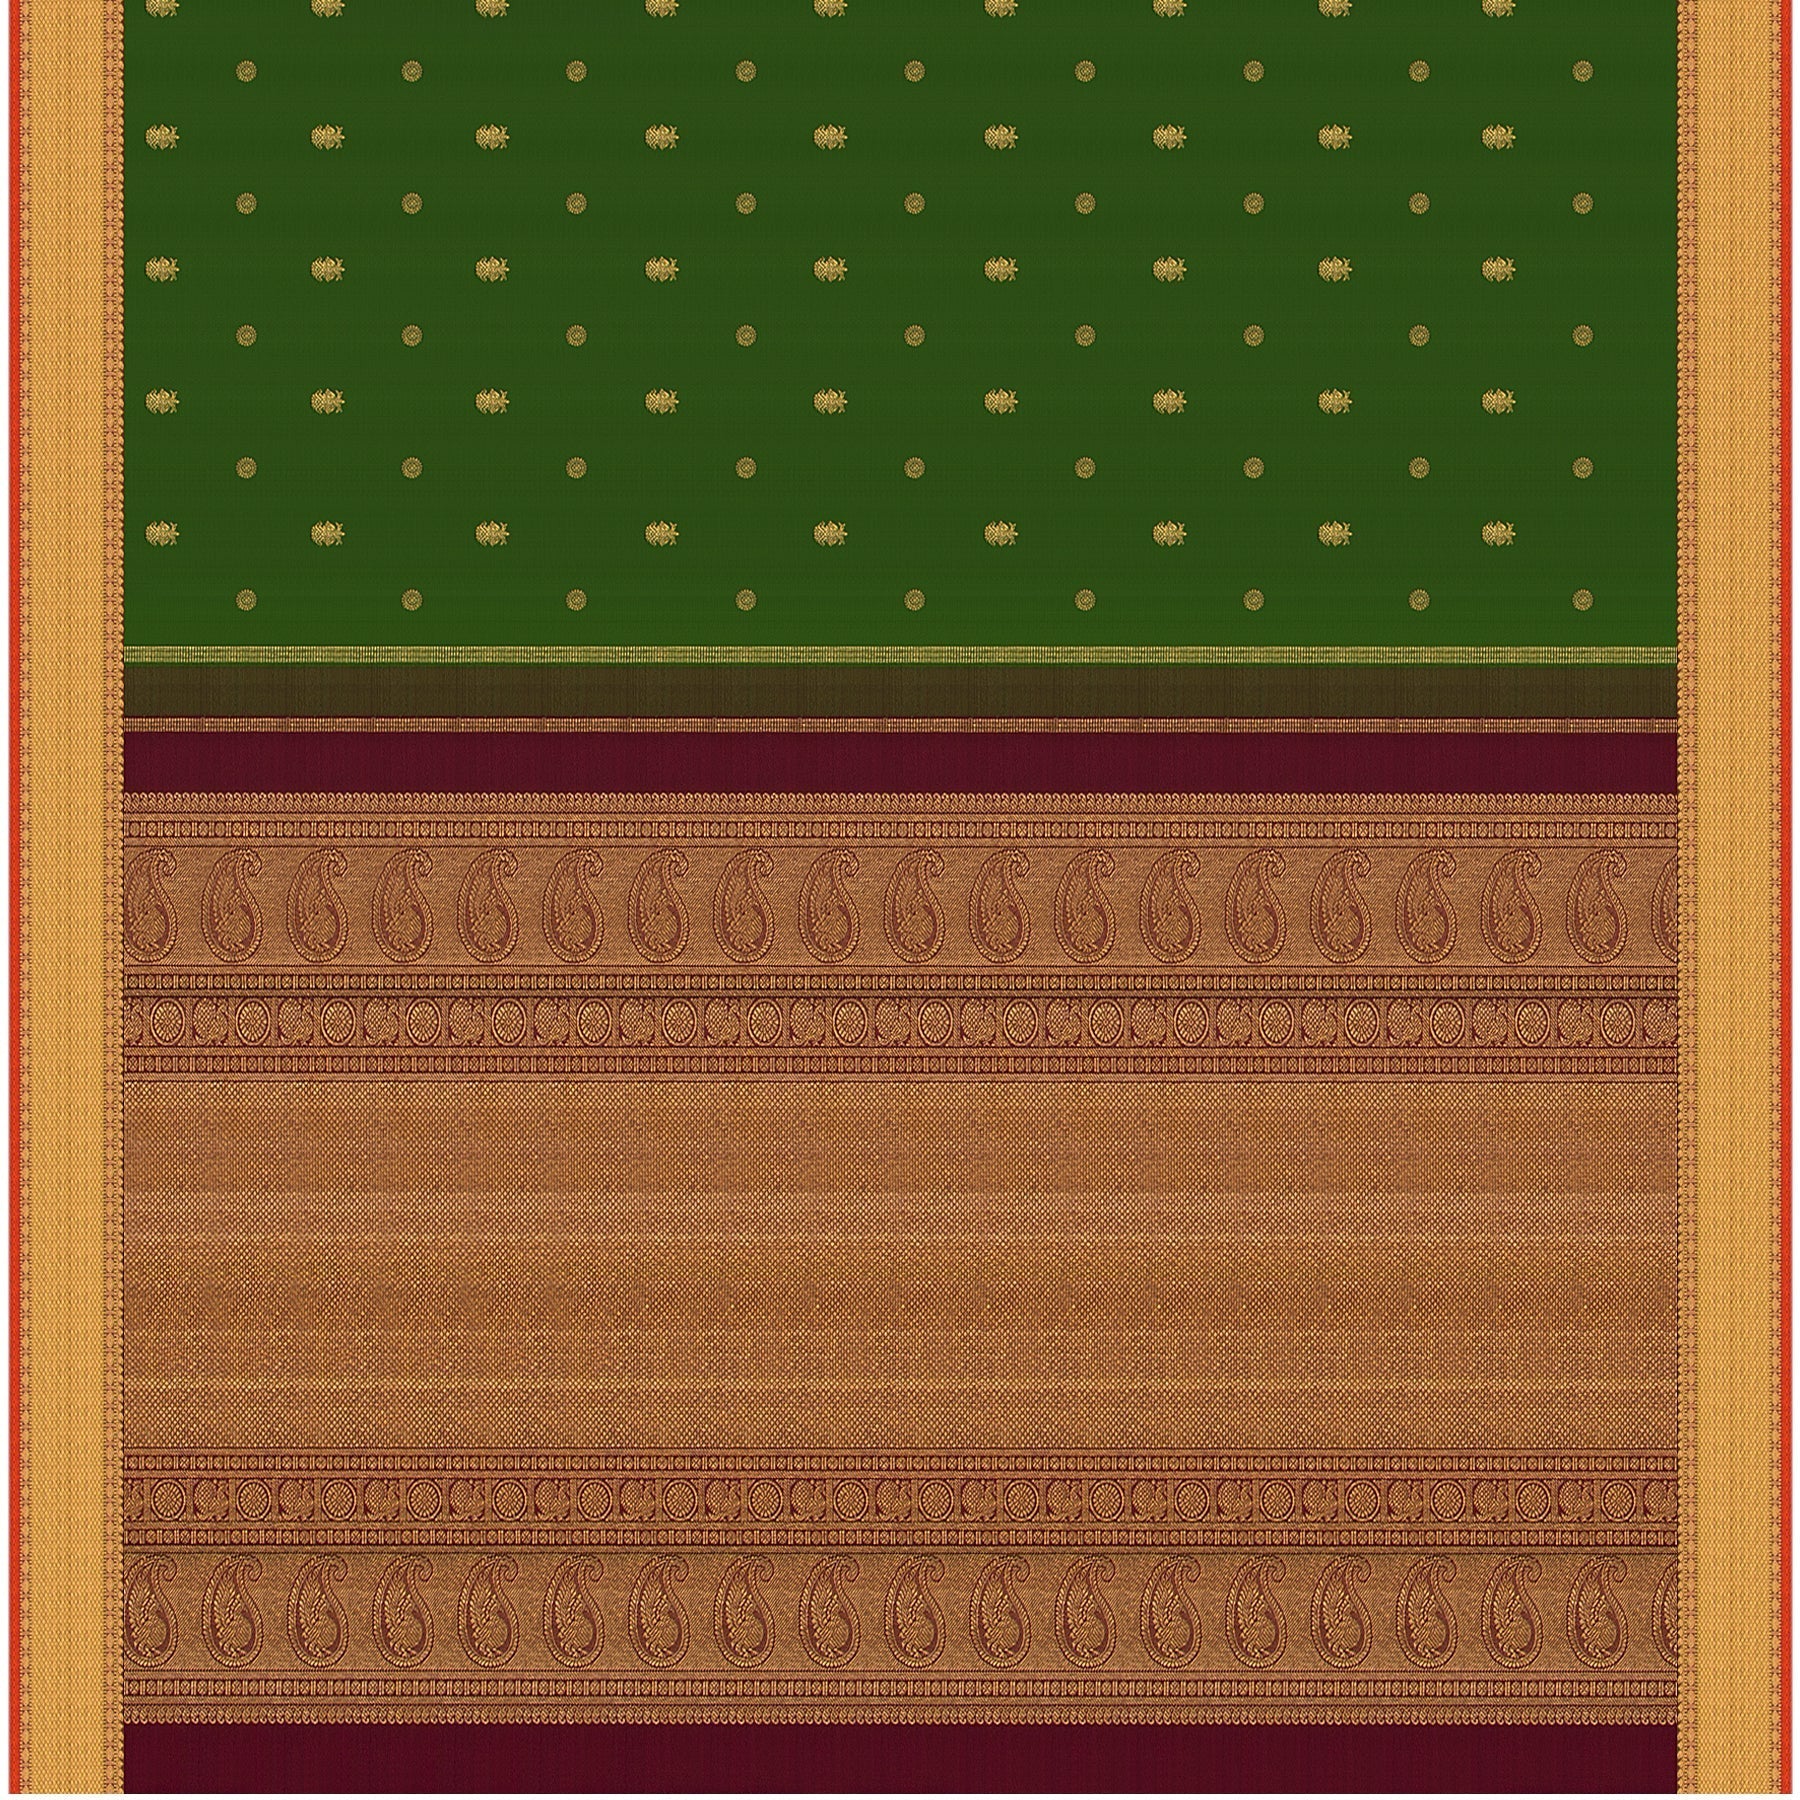 Kanakavalli Kanjivaram Silk Sari 23-110-HS001-03053 - Full View